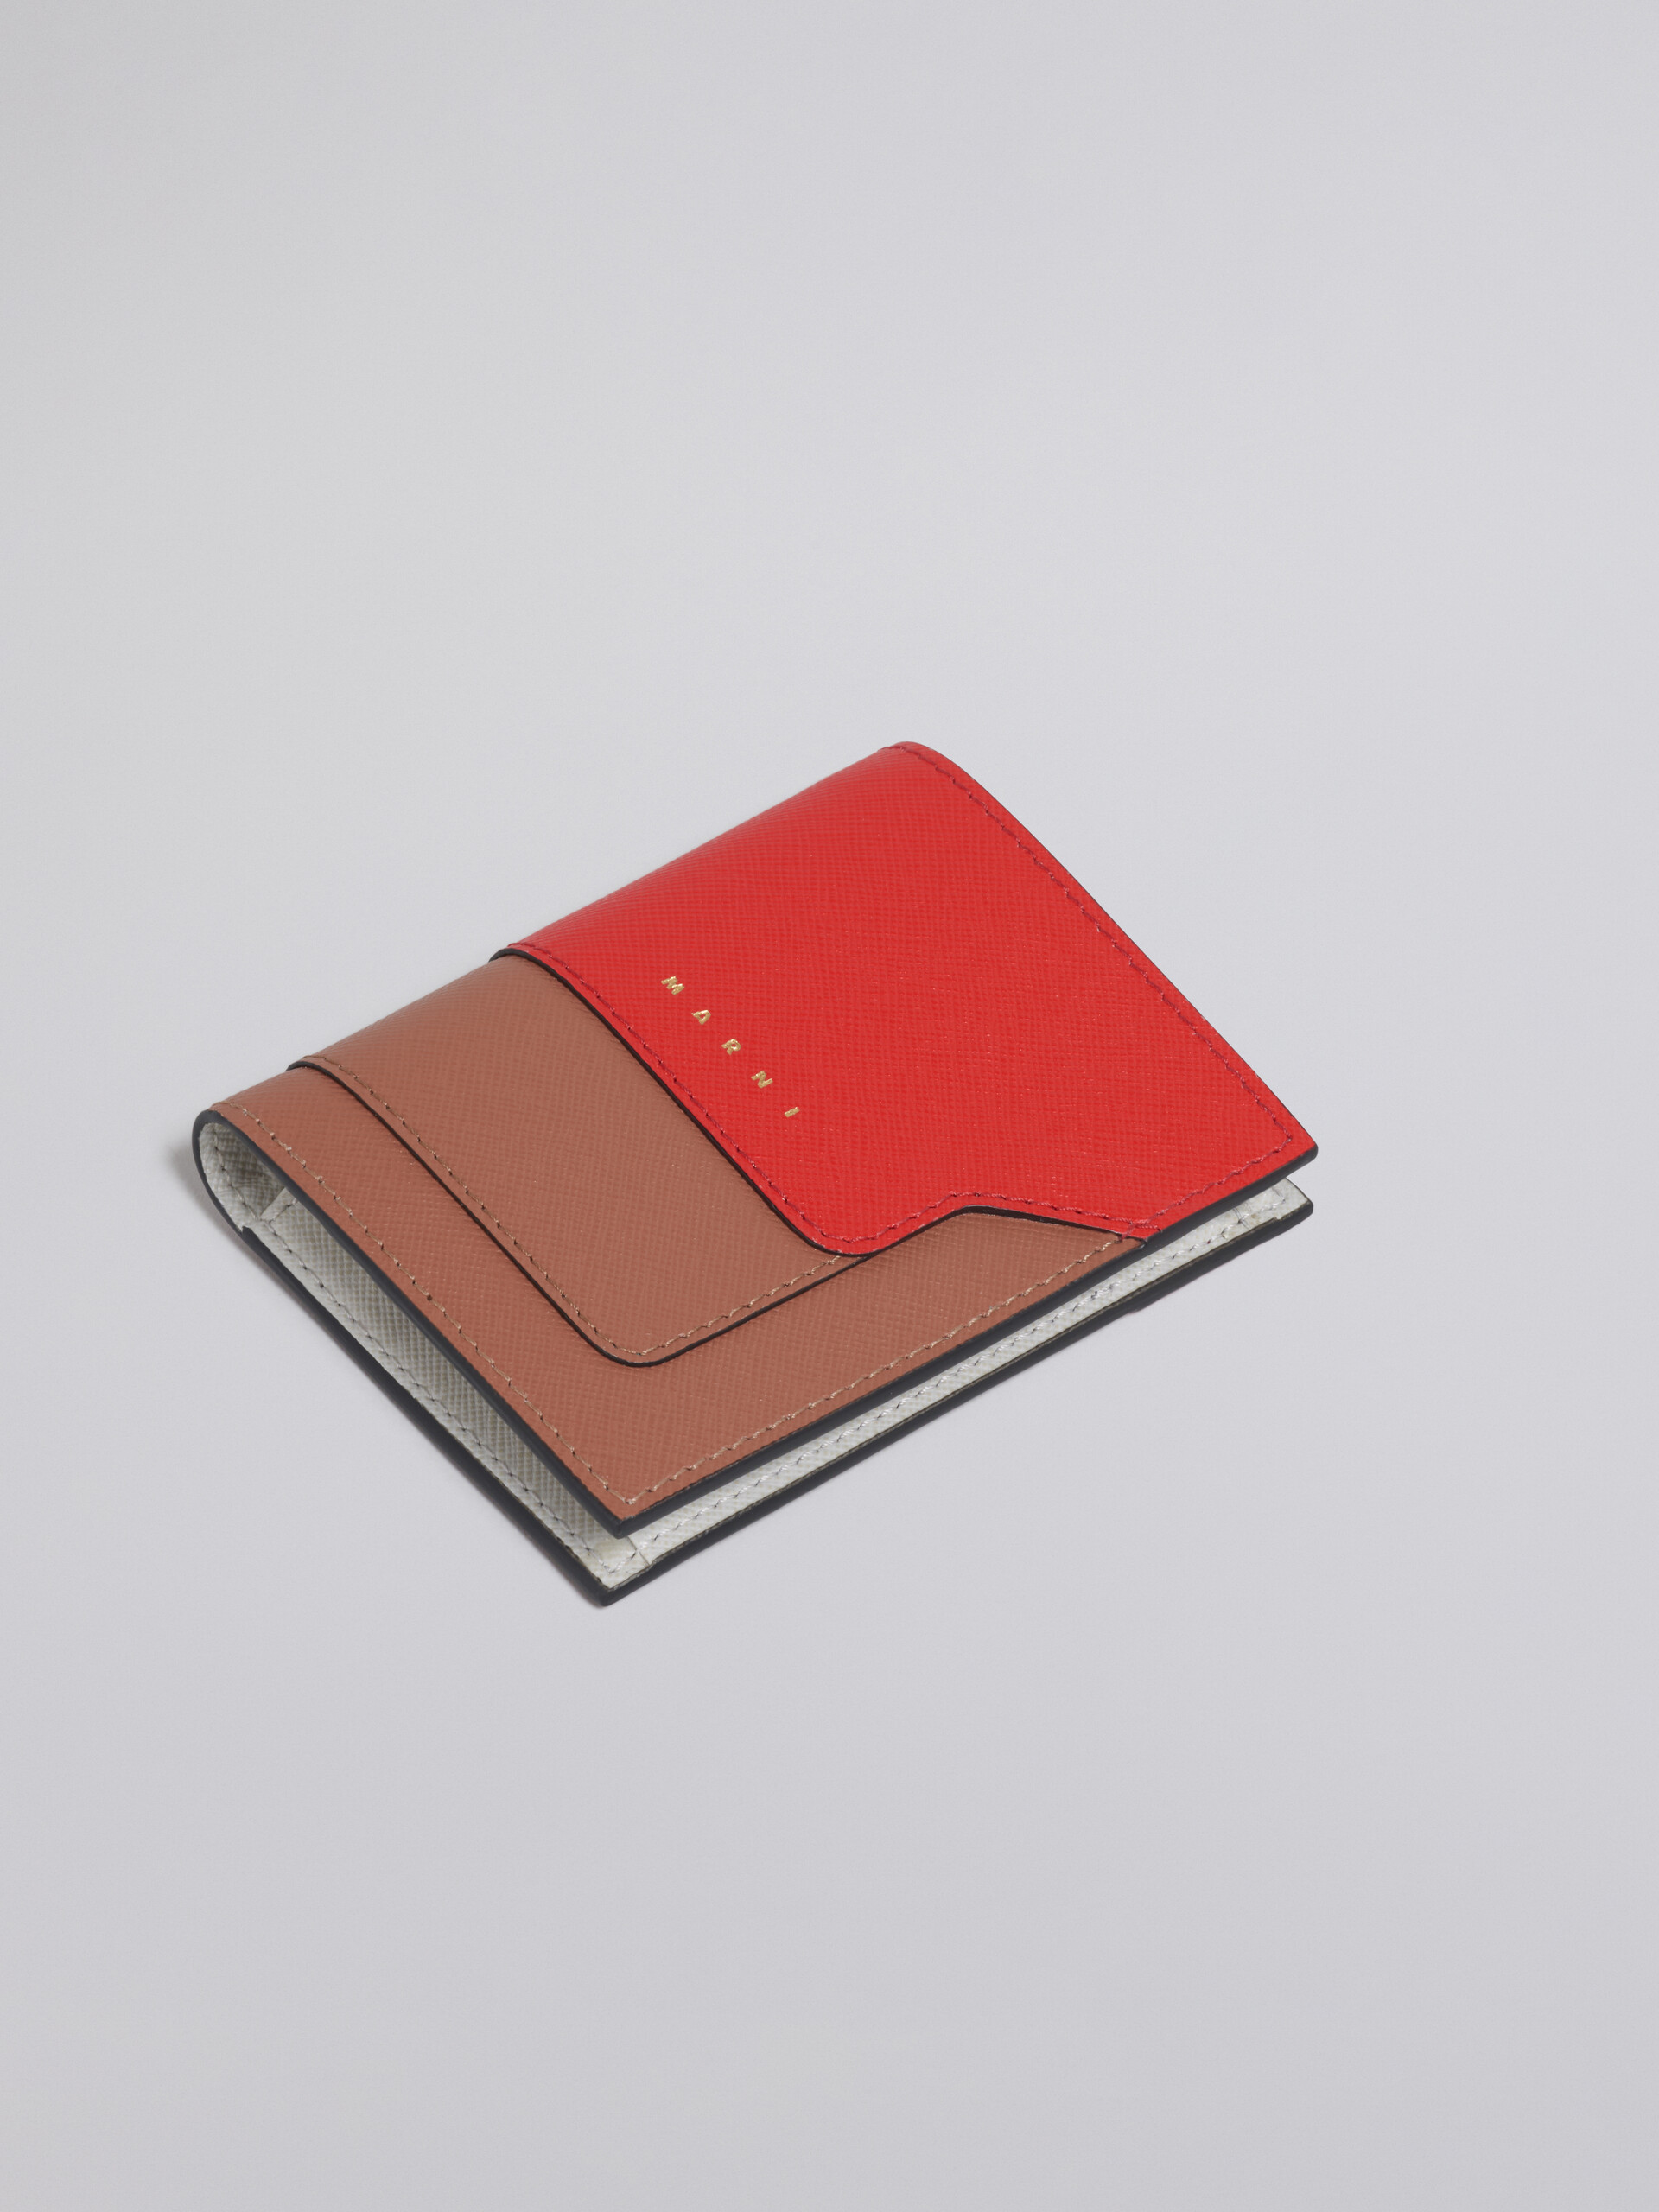 Dreifarbige zweiteilige Geldbörse aus Saffianleder in Weiß, Braun und Rot - Brieftaschen - Image 5